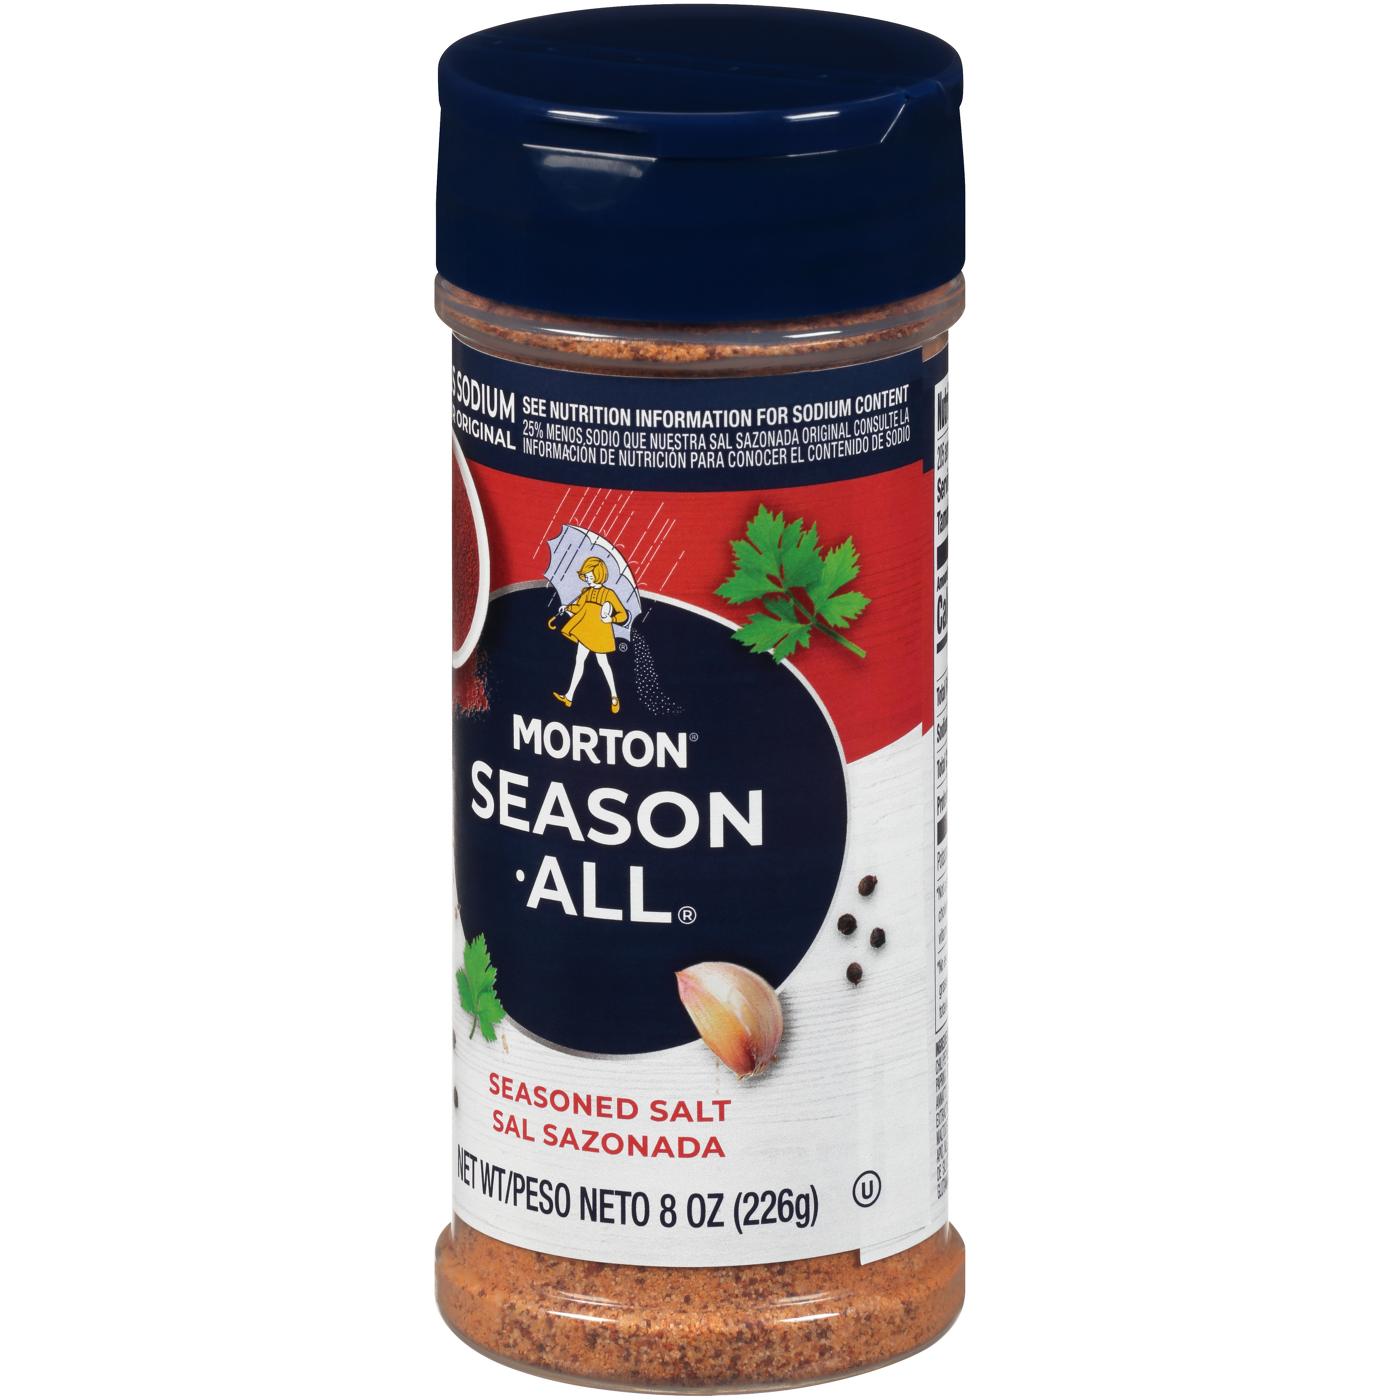 Morton Salt Nature's Seasons Seasoning Blend, 25% Less Sodium, 7.5 oz